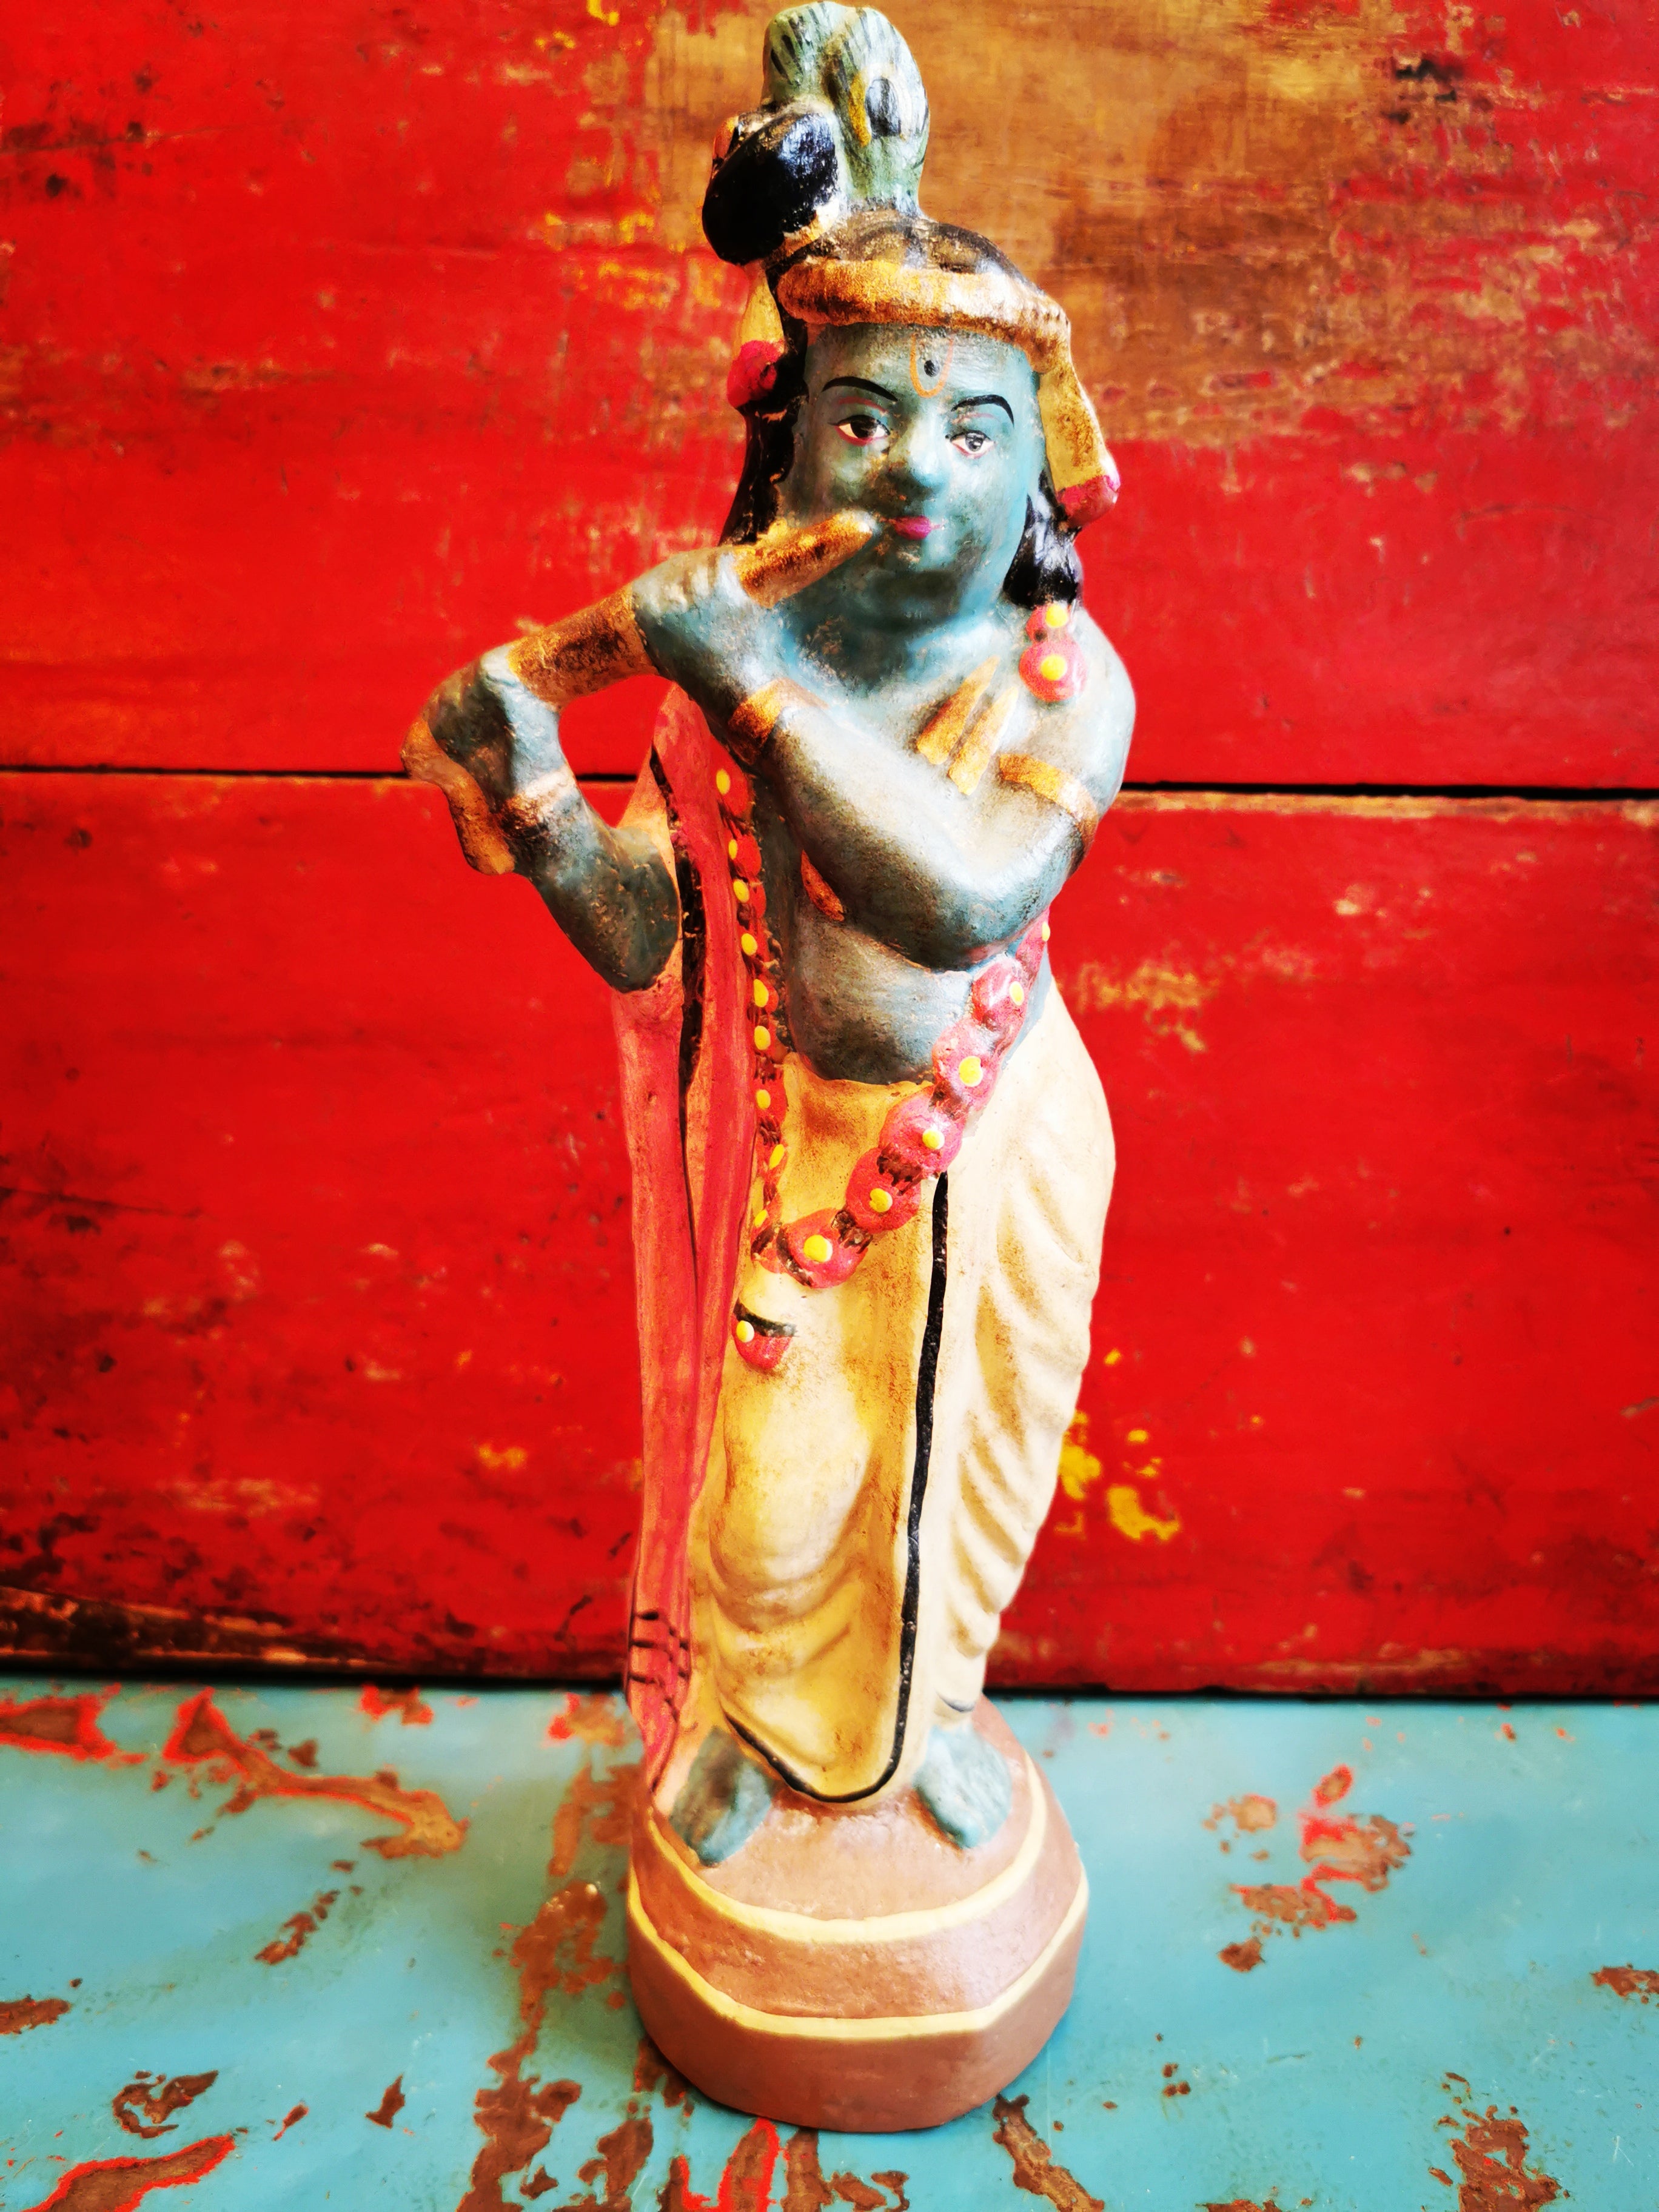 Handpainted Hindu Gods